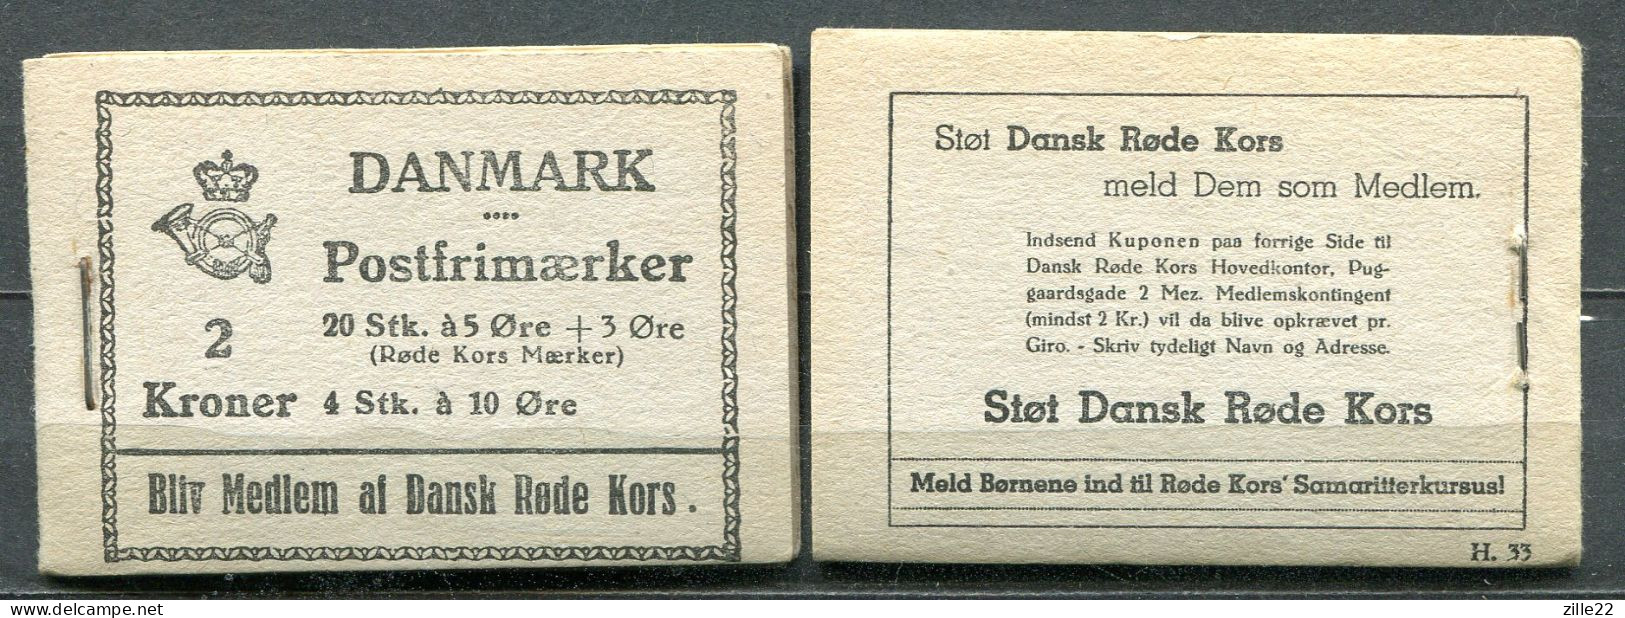 Dänemark Denmark 2 Kr Markenheft Handmade And Complete - Postfrisch/MNH - 1943 Red Cross Commercial H33 - Markenheftchen